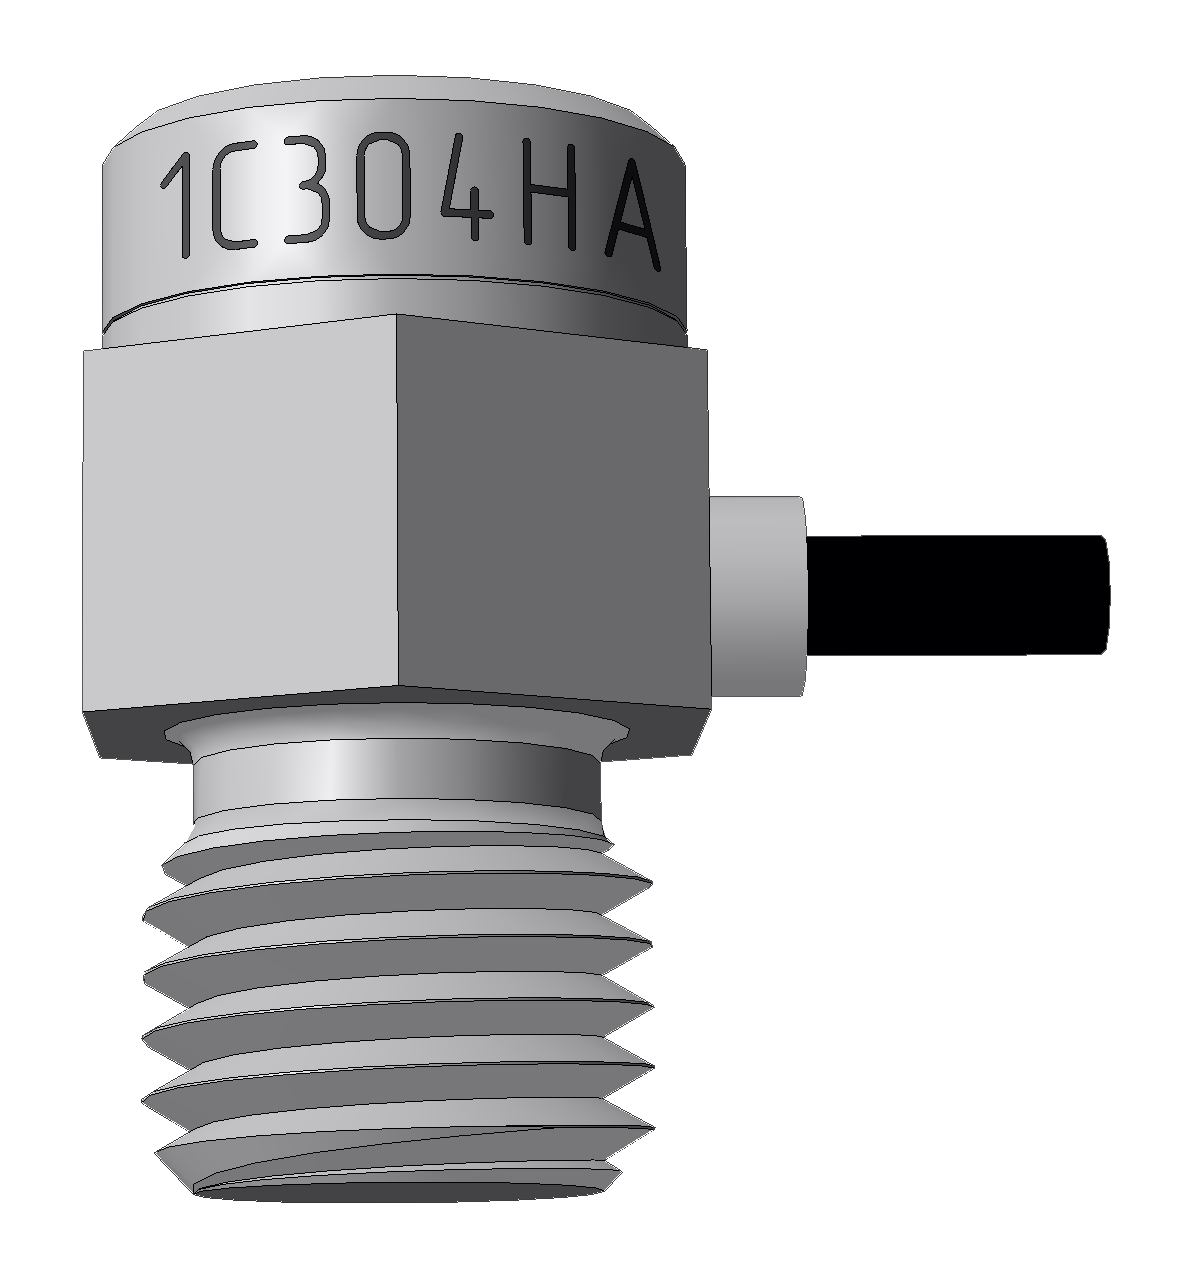 Акселерометр зарядовый ударный однокомпонентный GTLAB 1C304HA-01 Датчики ускорения (акселерометры)